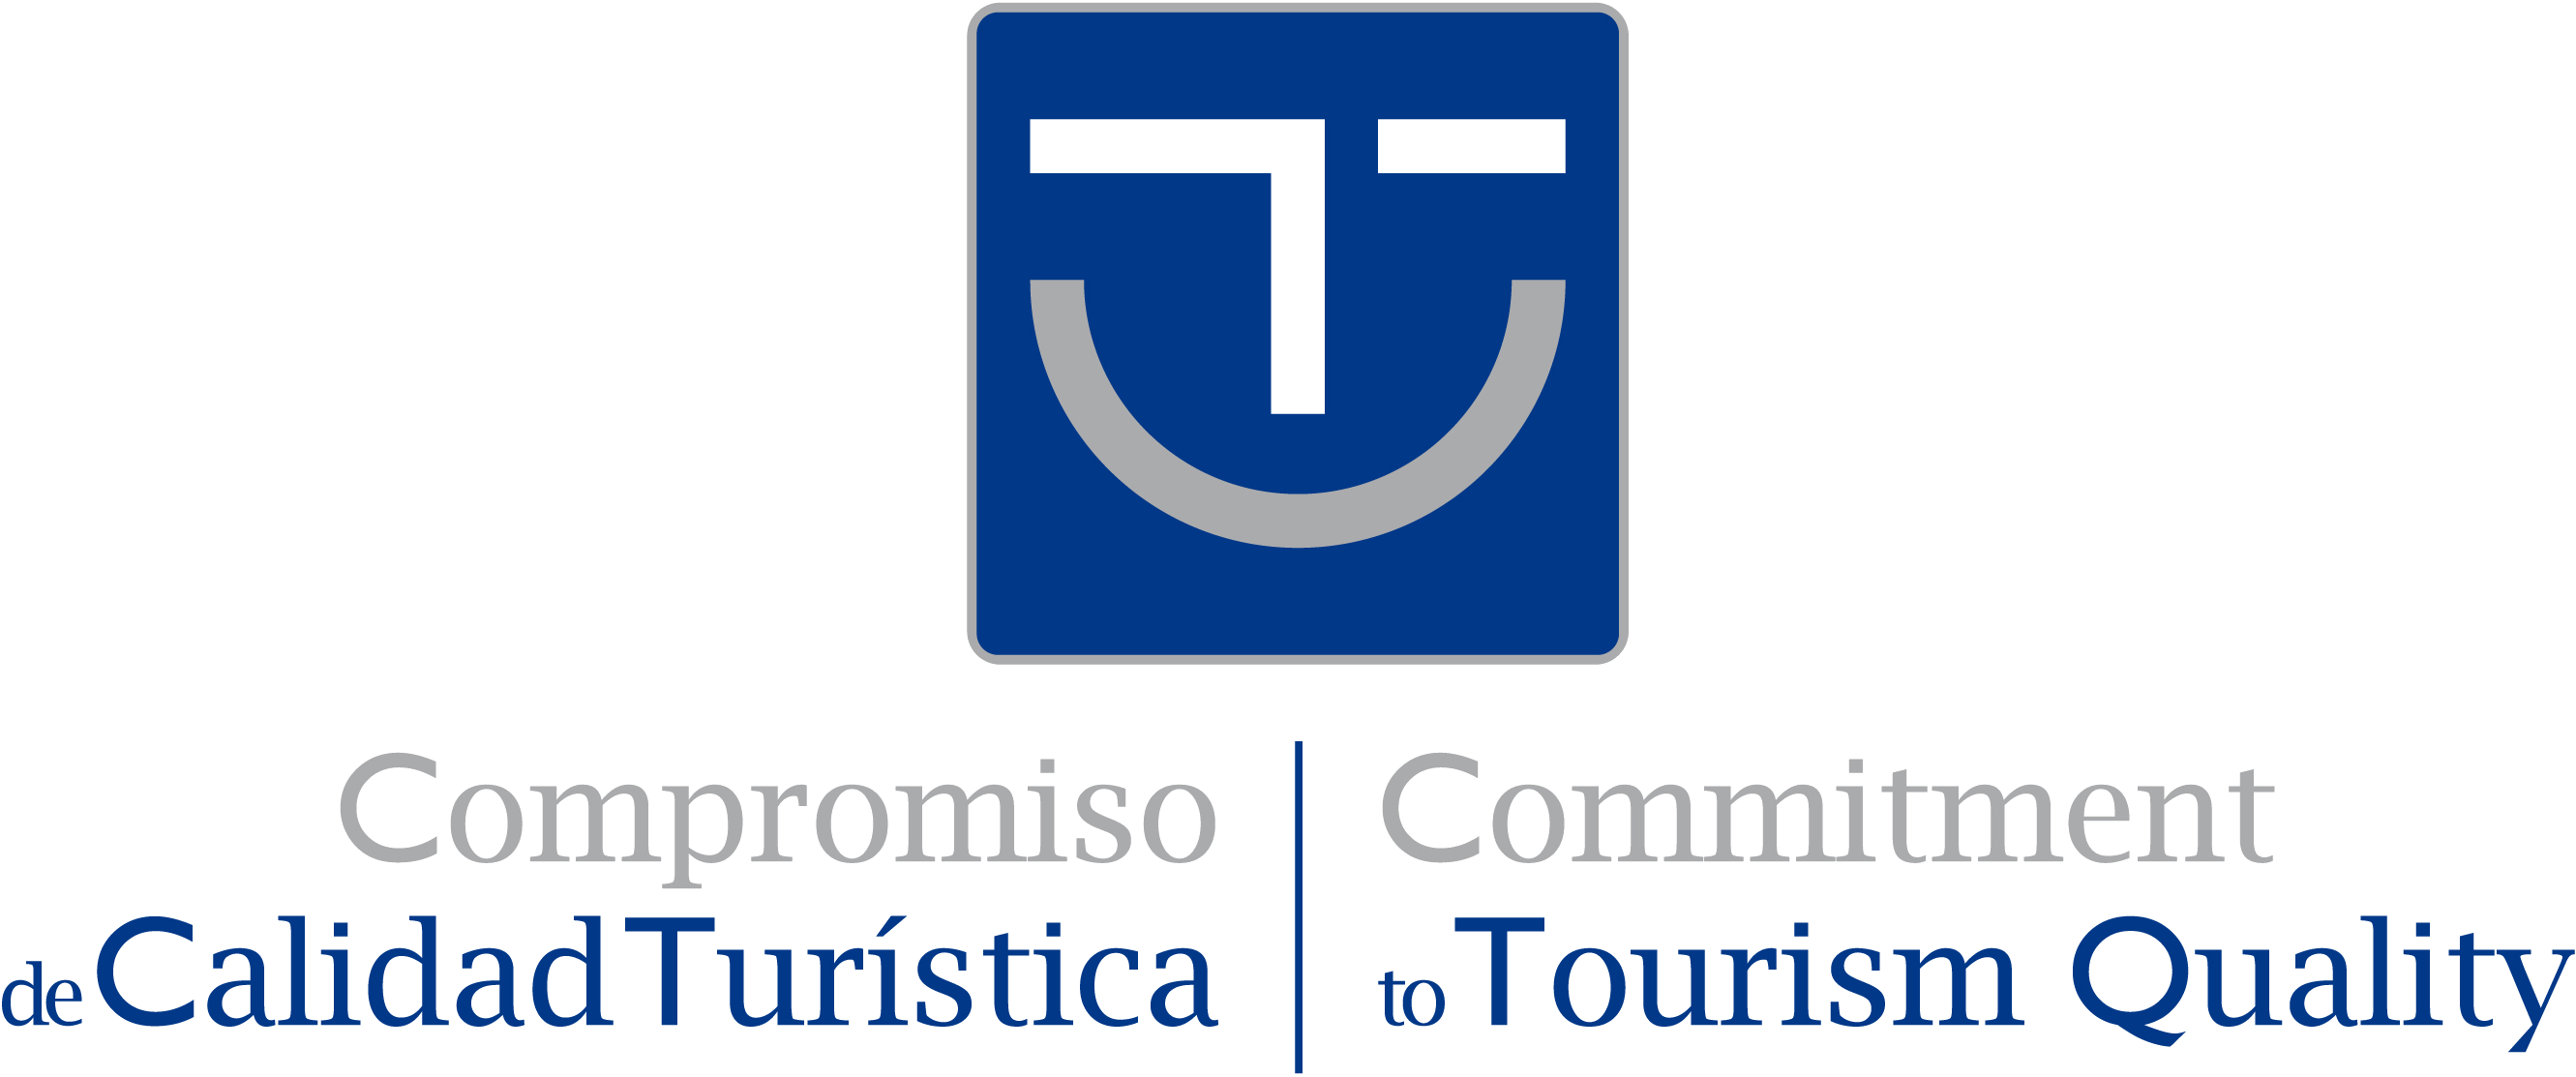 “Compromiso de Calidad Turística 2017”  Comité SICTED de Turespaña 